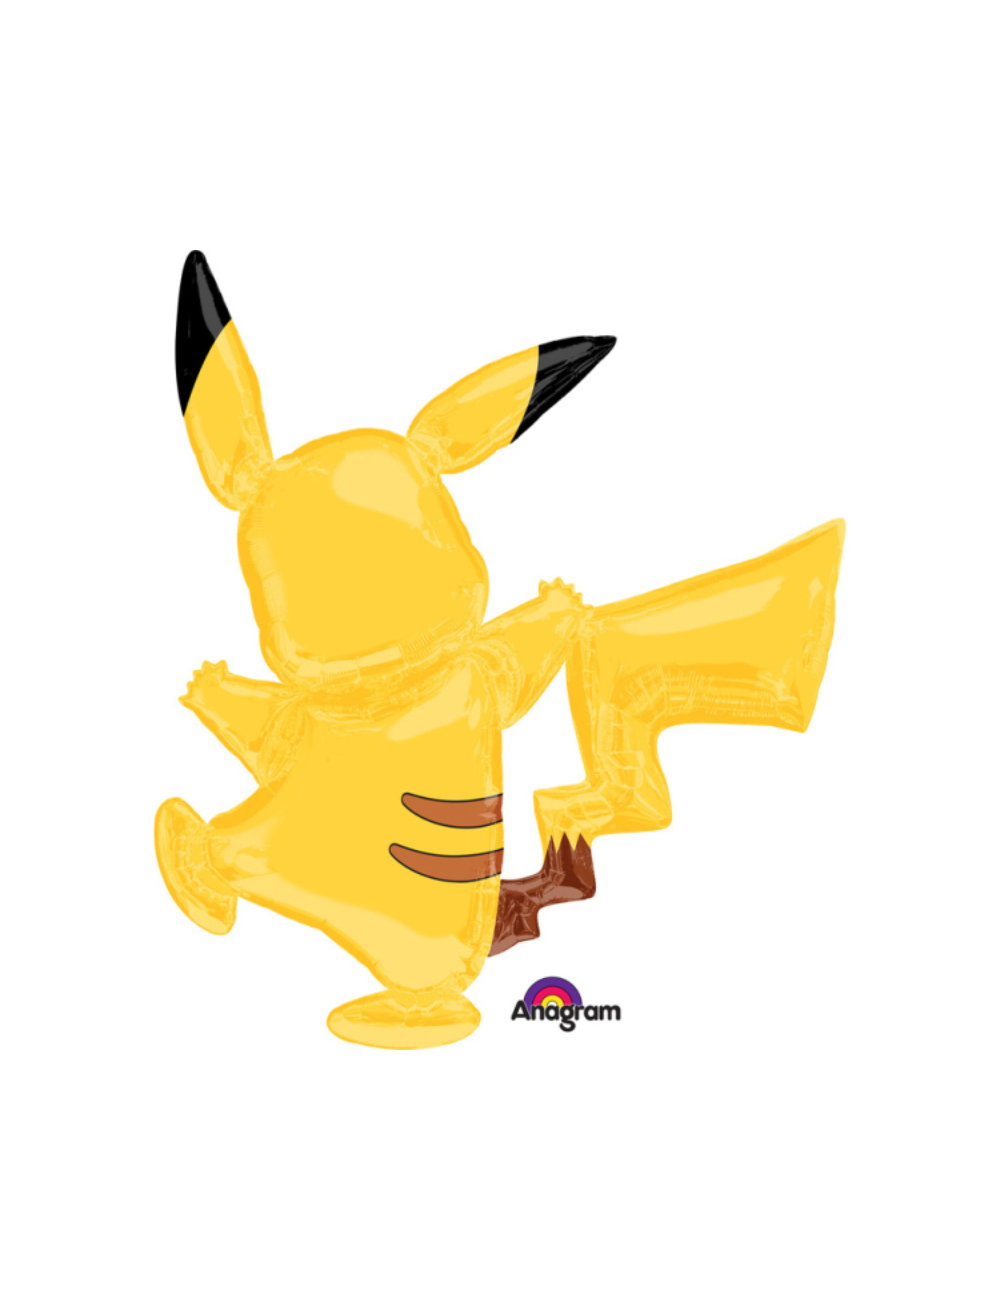 Ballon Géant Pikachu Pokemon (78 cm) pour l'anniversaire de votre enfant -  Annikids